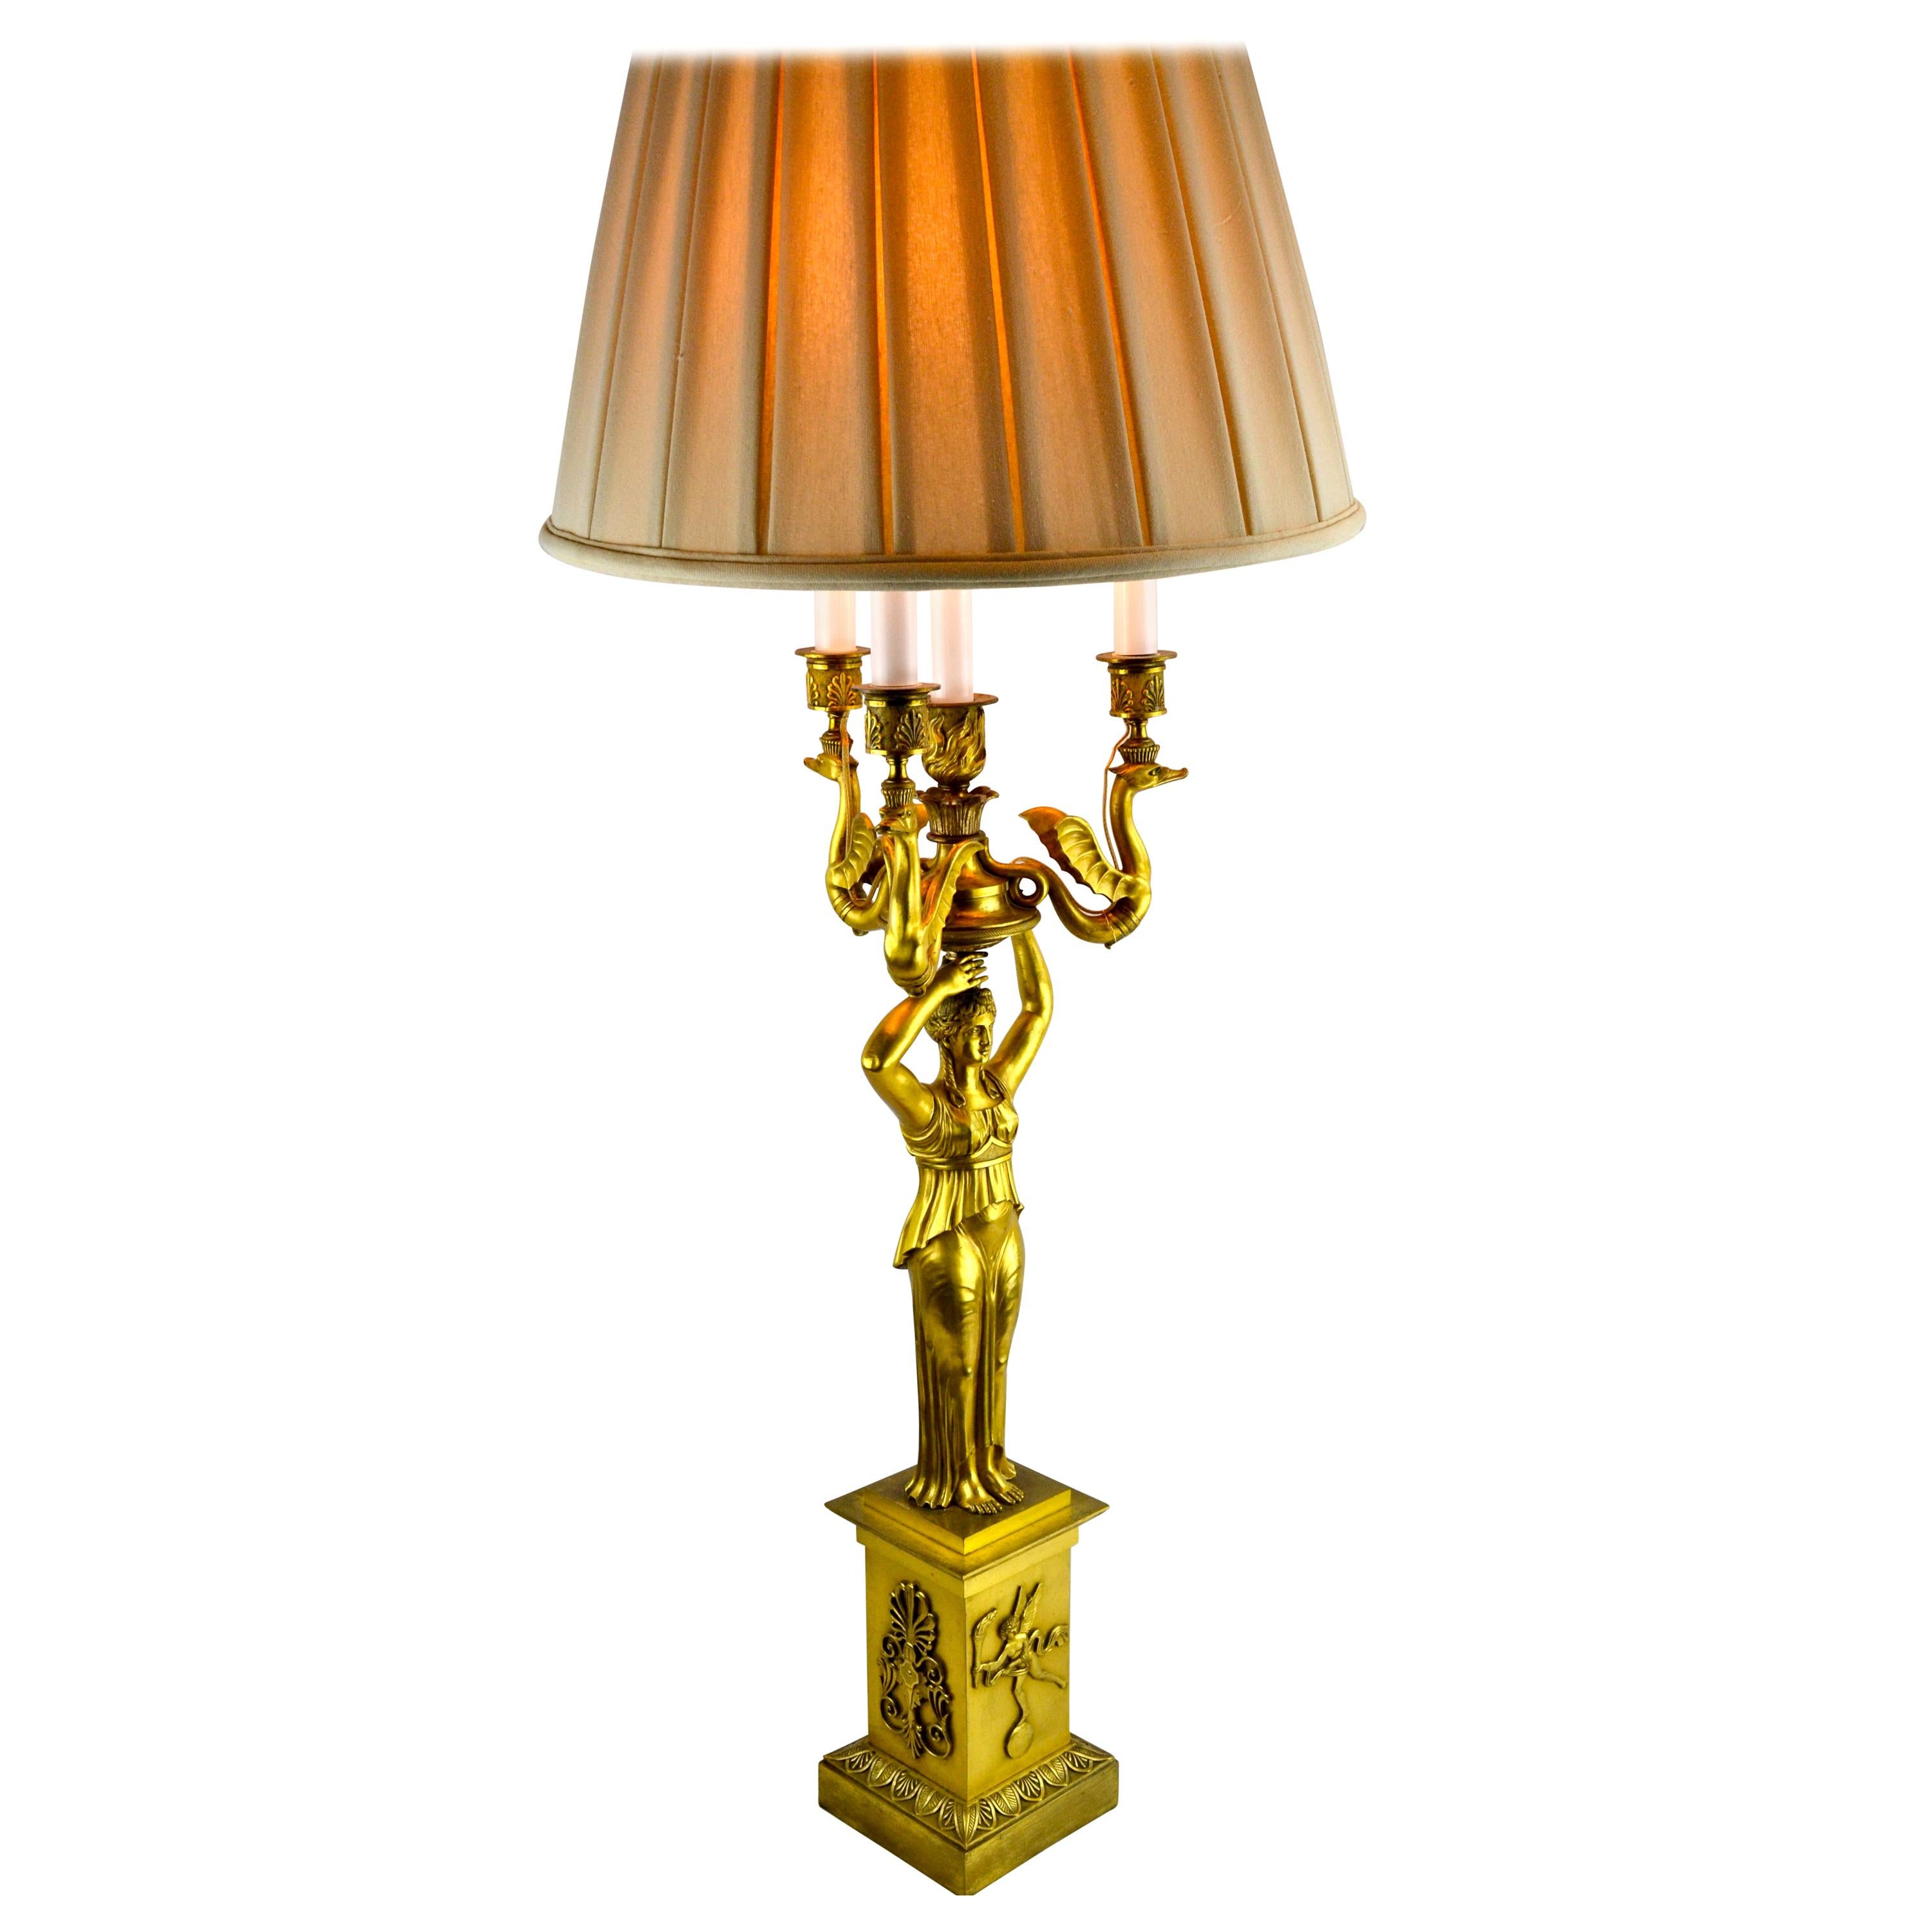 Candélabre figuratif de l'Empire russe en bronze doré du XIXe siècle transformé en lampe